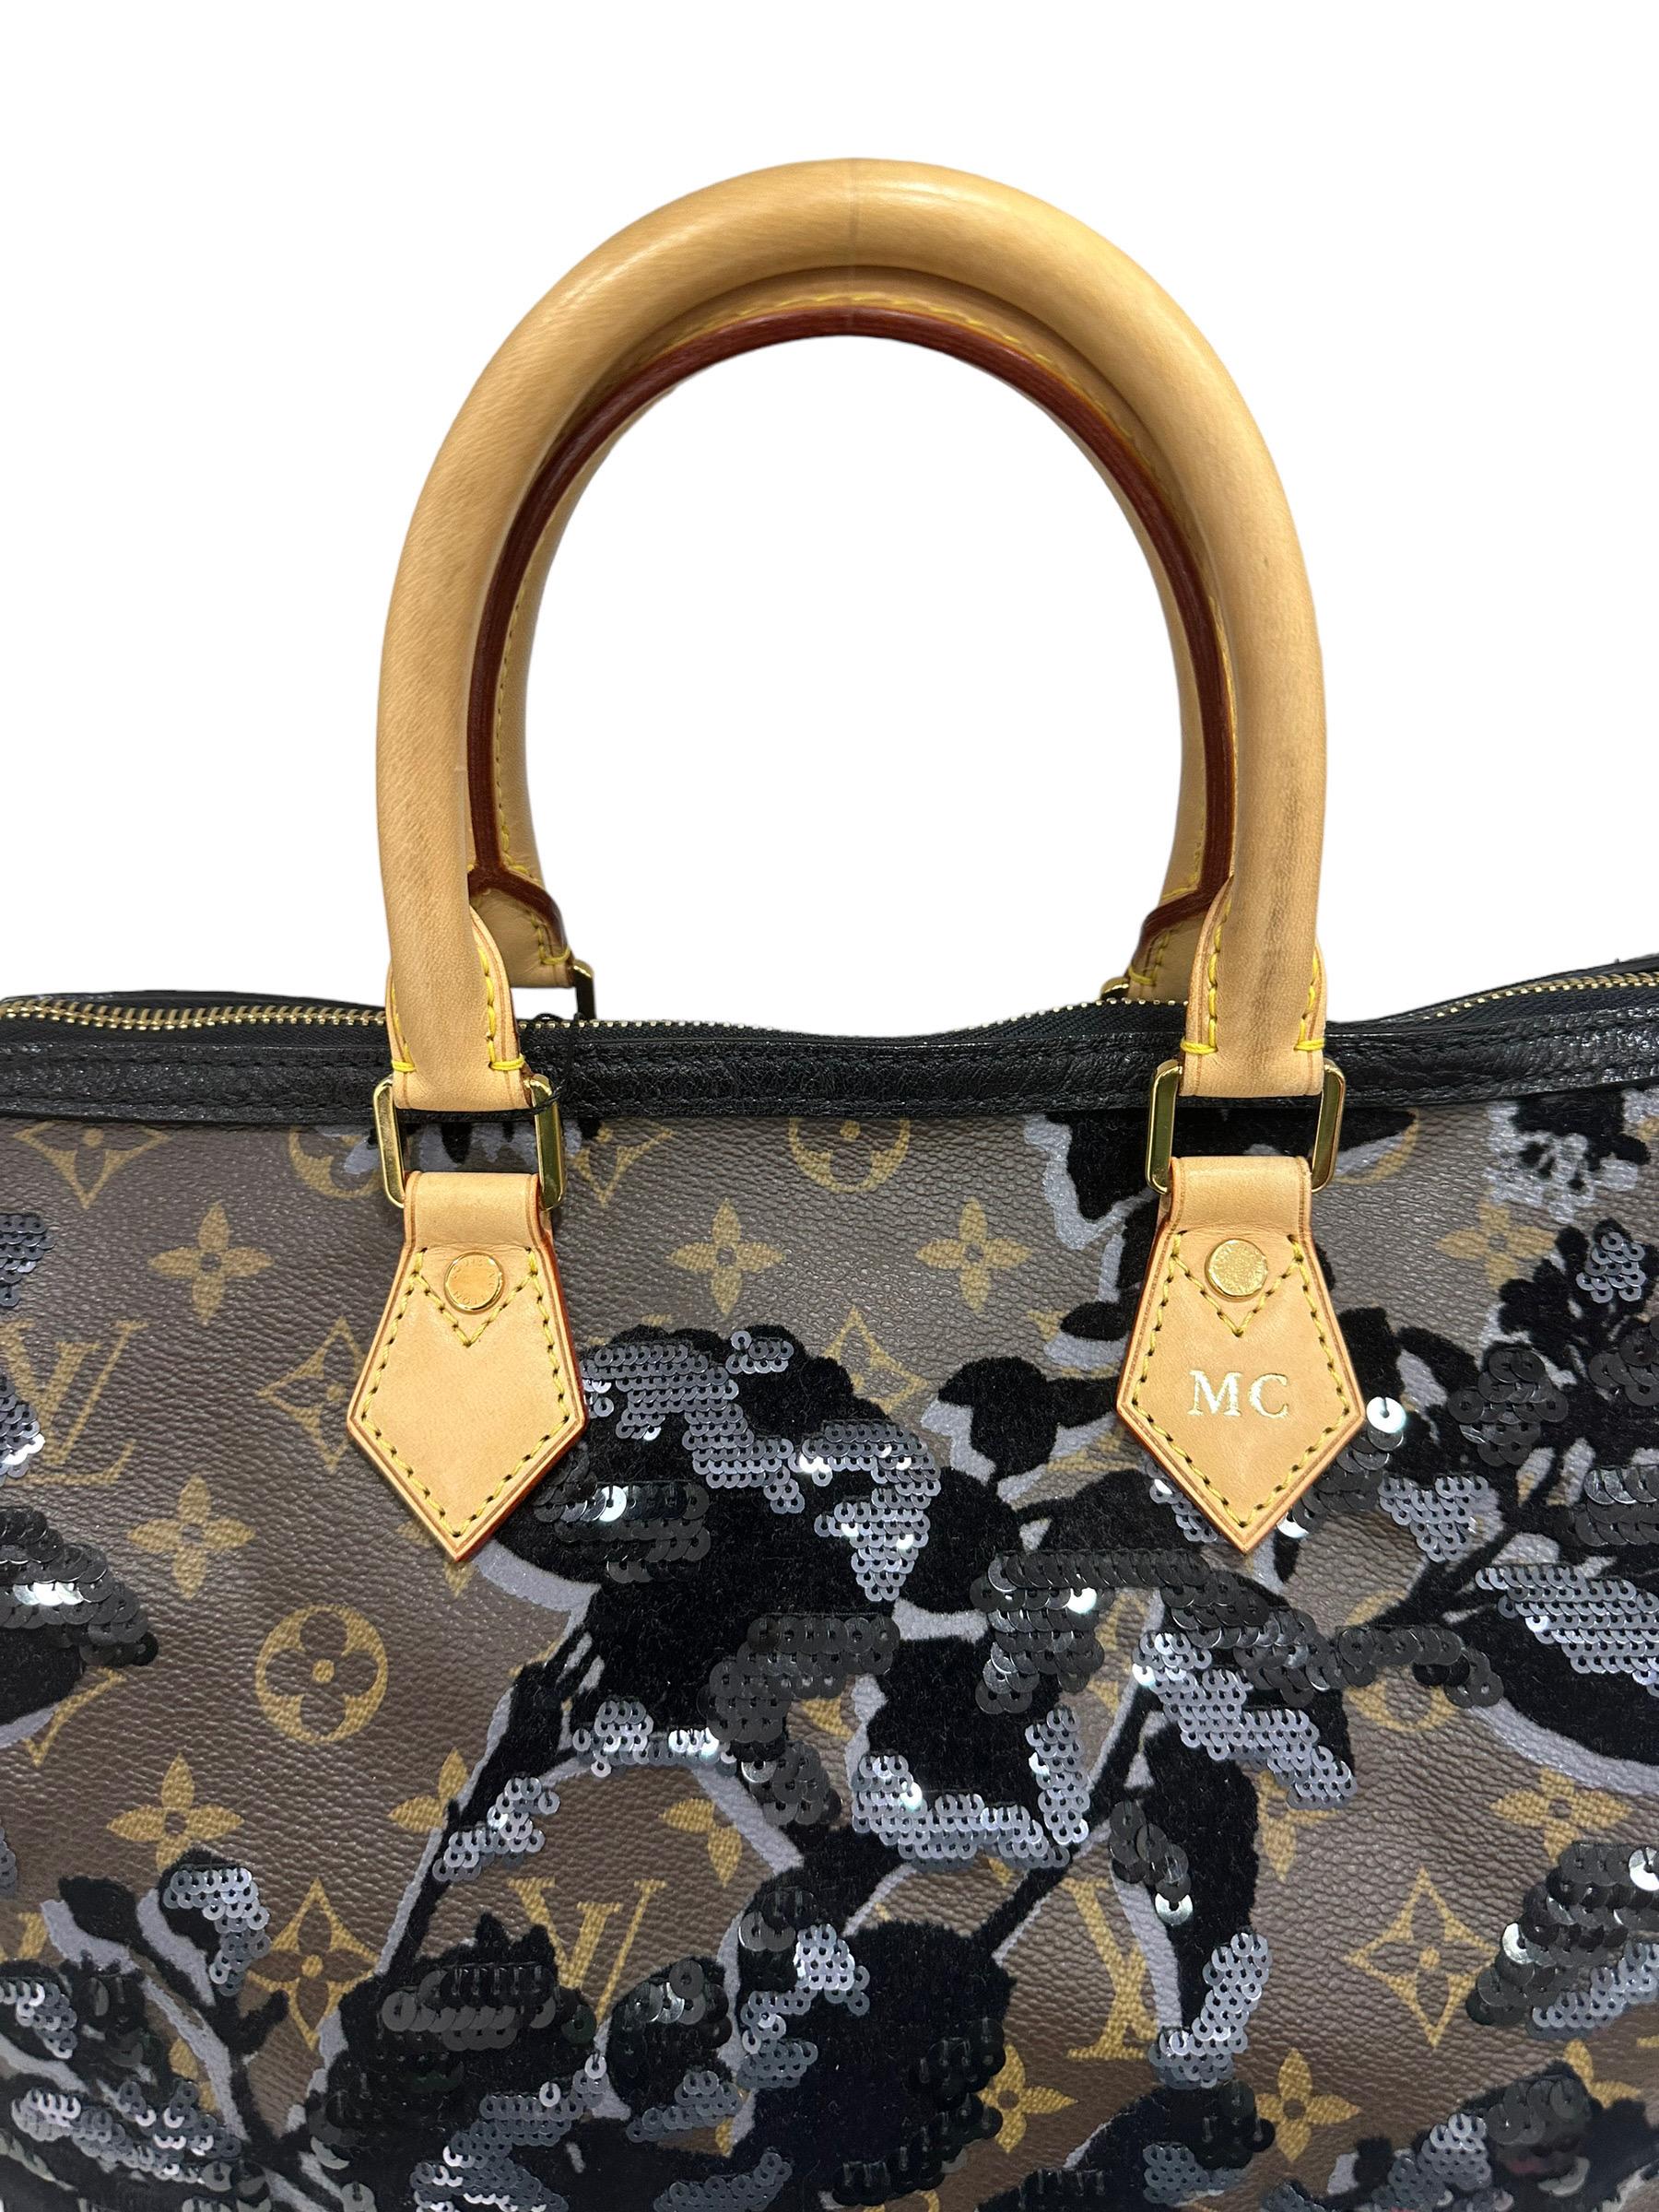 2011 Louis Vuitton Speedy 30 Fleur De Jais Limited Edition Top Handle Bag 5